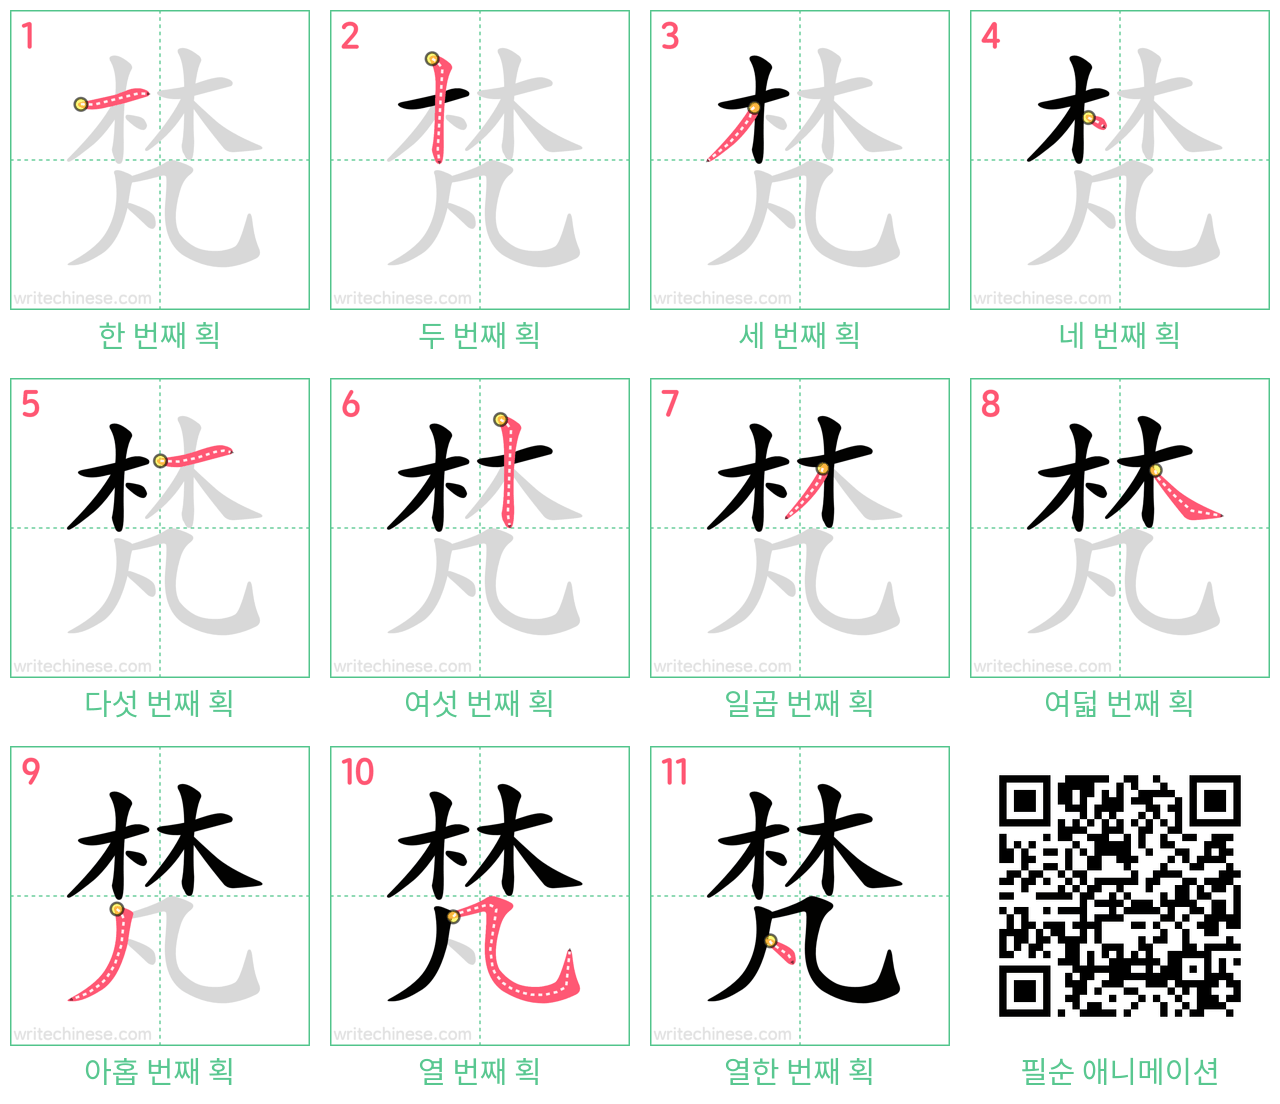 梵 step-by-step stroke order diagrams